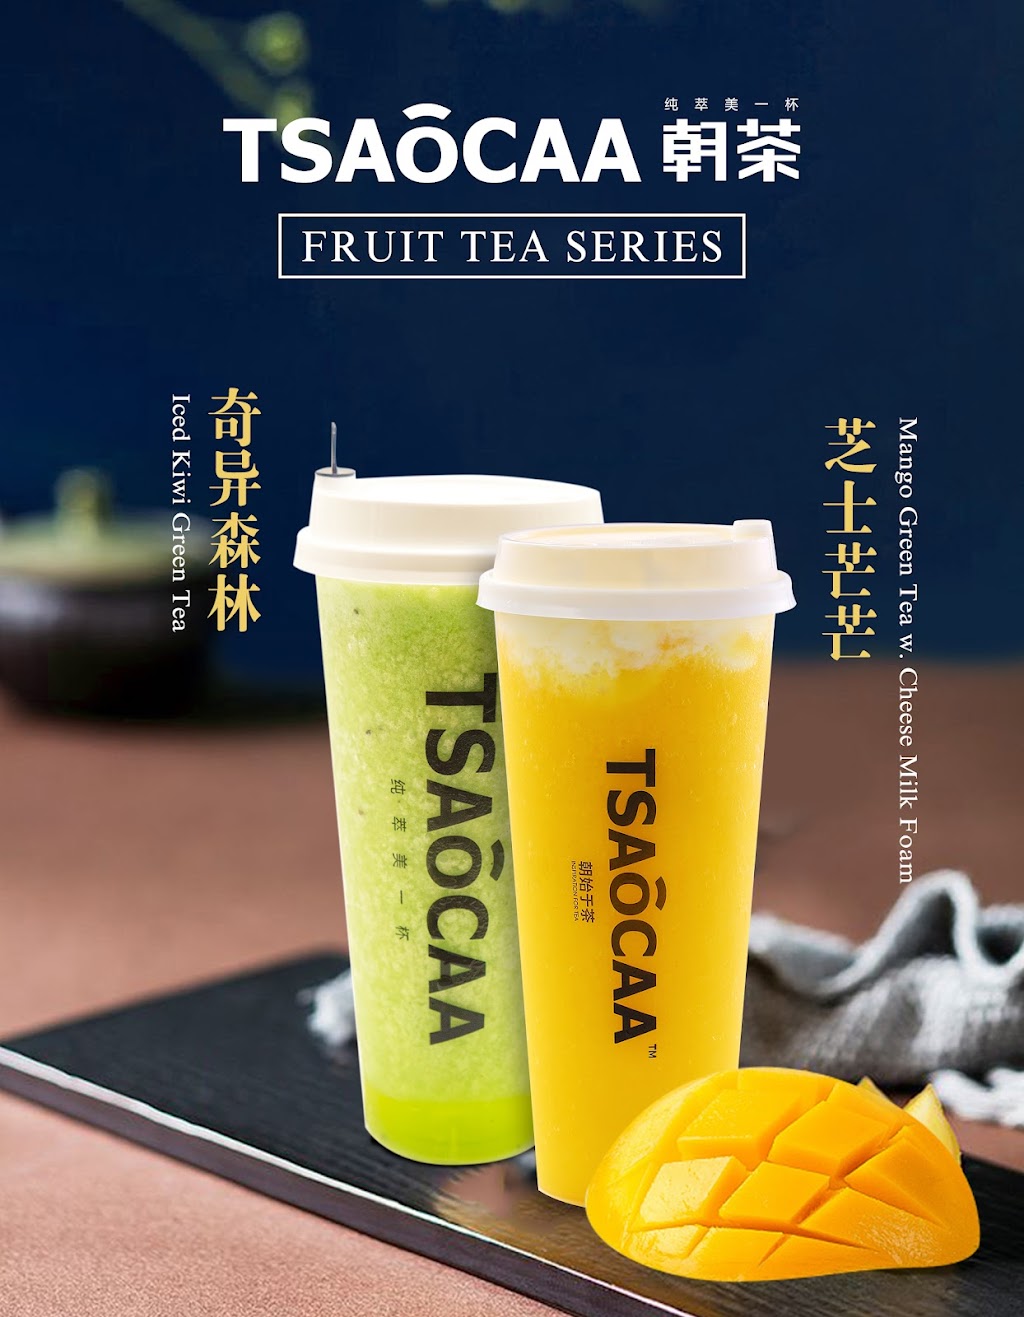 朝茶 Tsaocaa bubble tea store | 65-07 Fresh Pond Rd, Queens, NY 11385 | Phone: (347) 997-3377